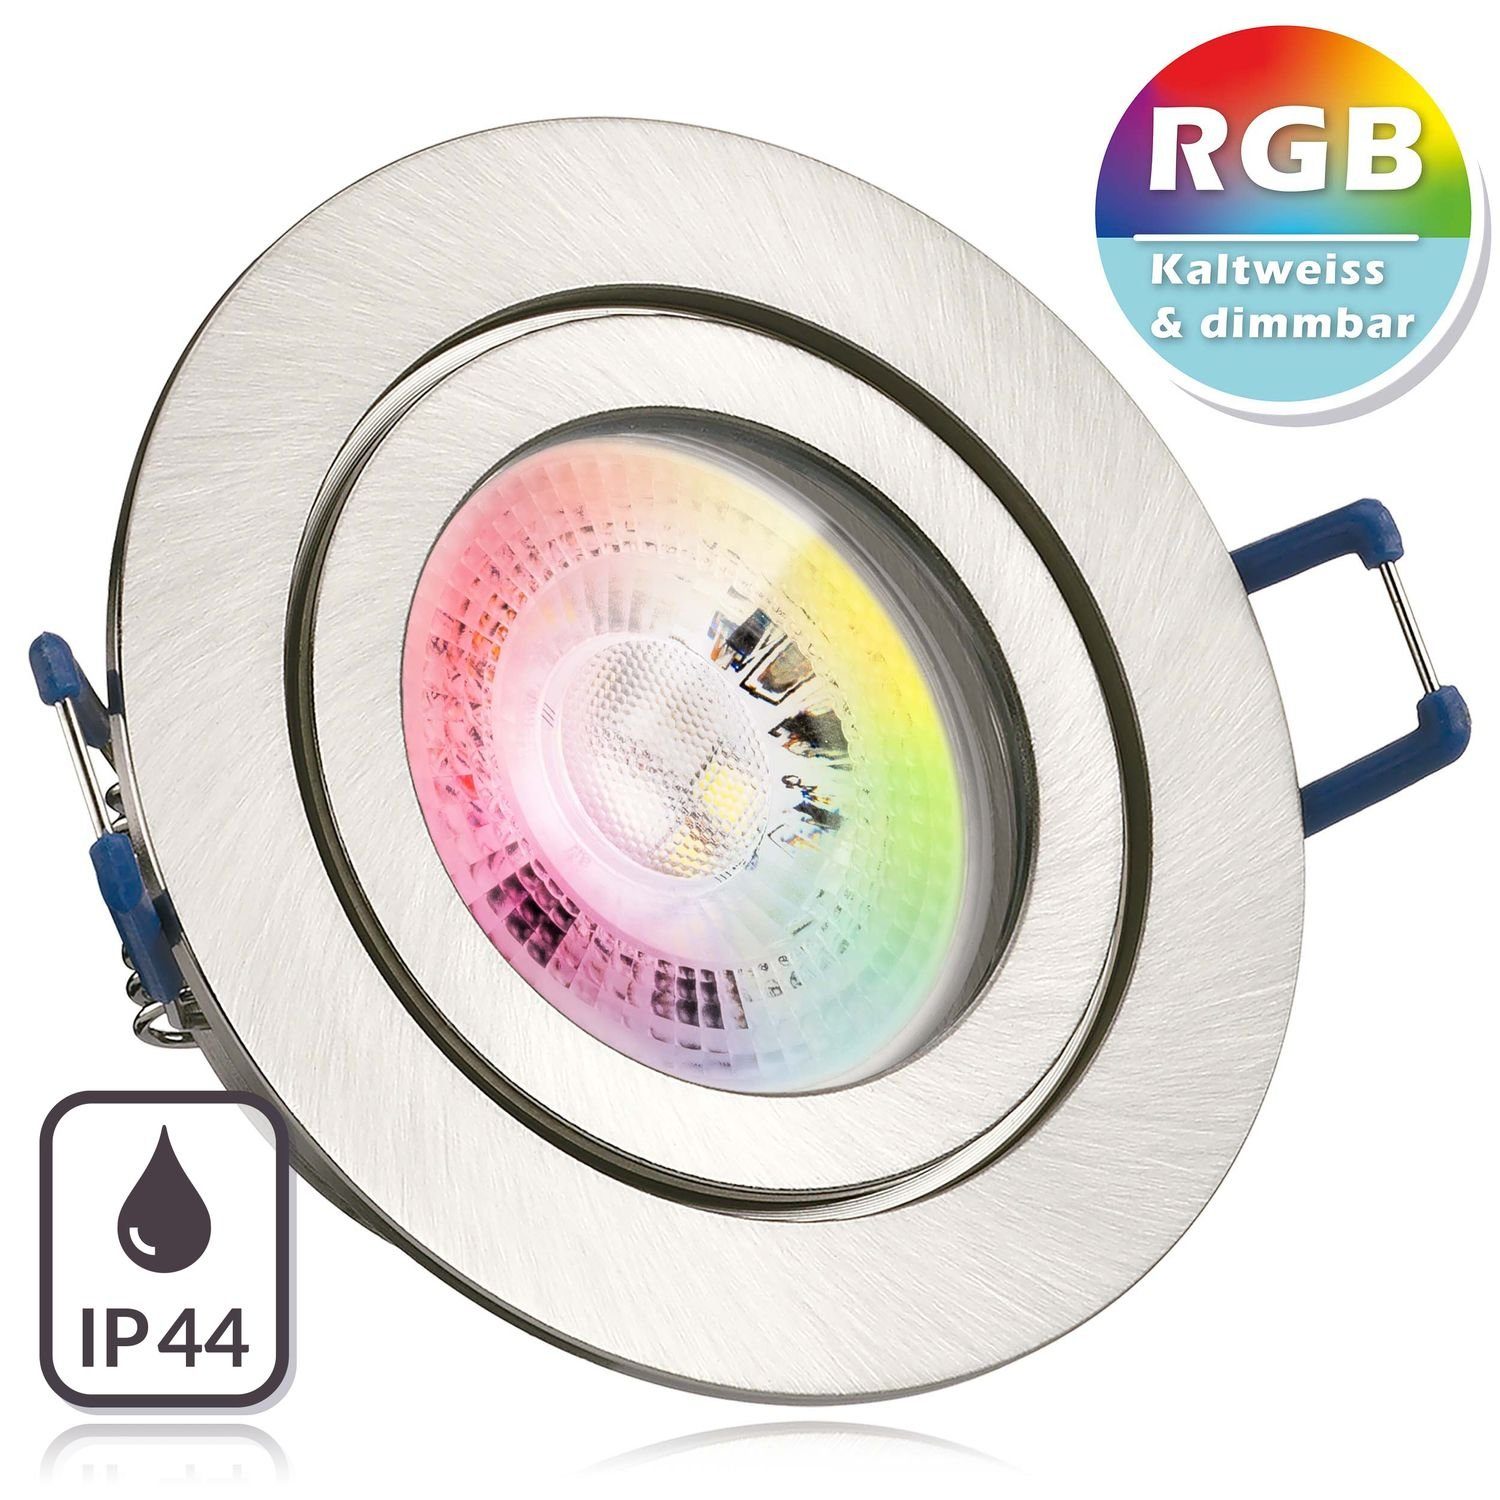 LEDANDO LED Einbaustrahler IP44 RGB LED Einbaustrahler Set GU10 in edelstahl / silber gebürstet m